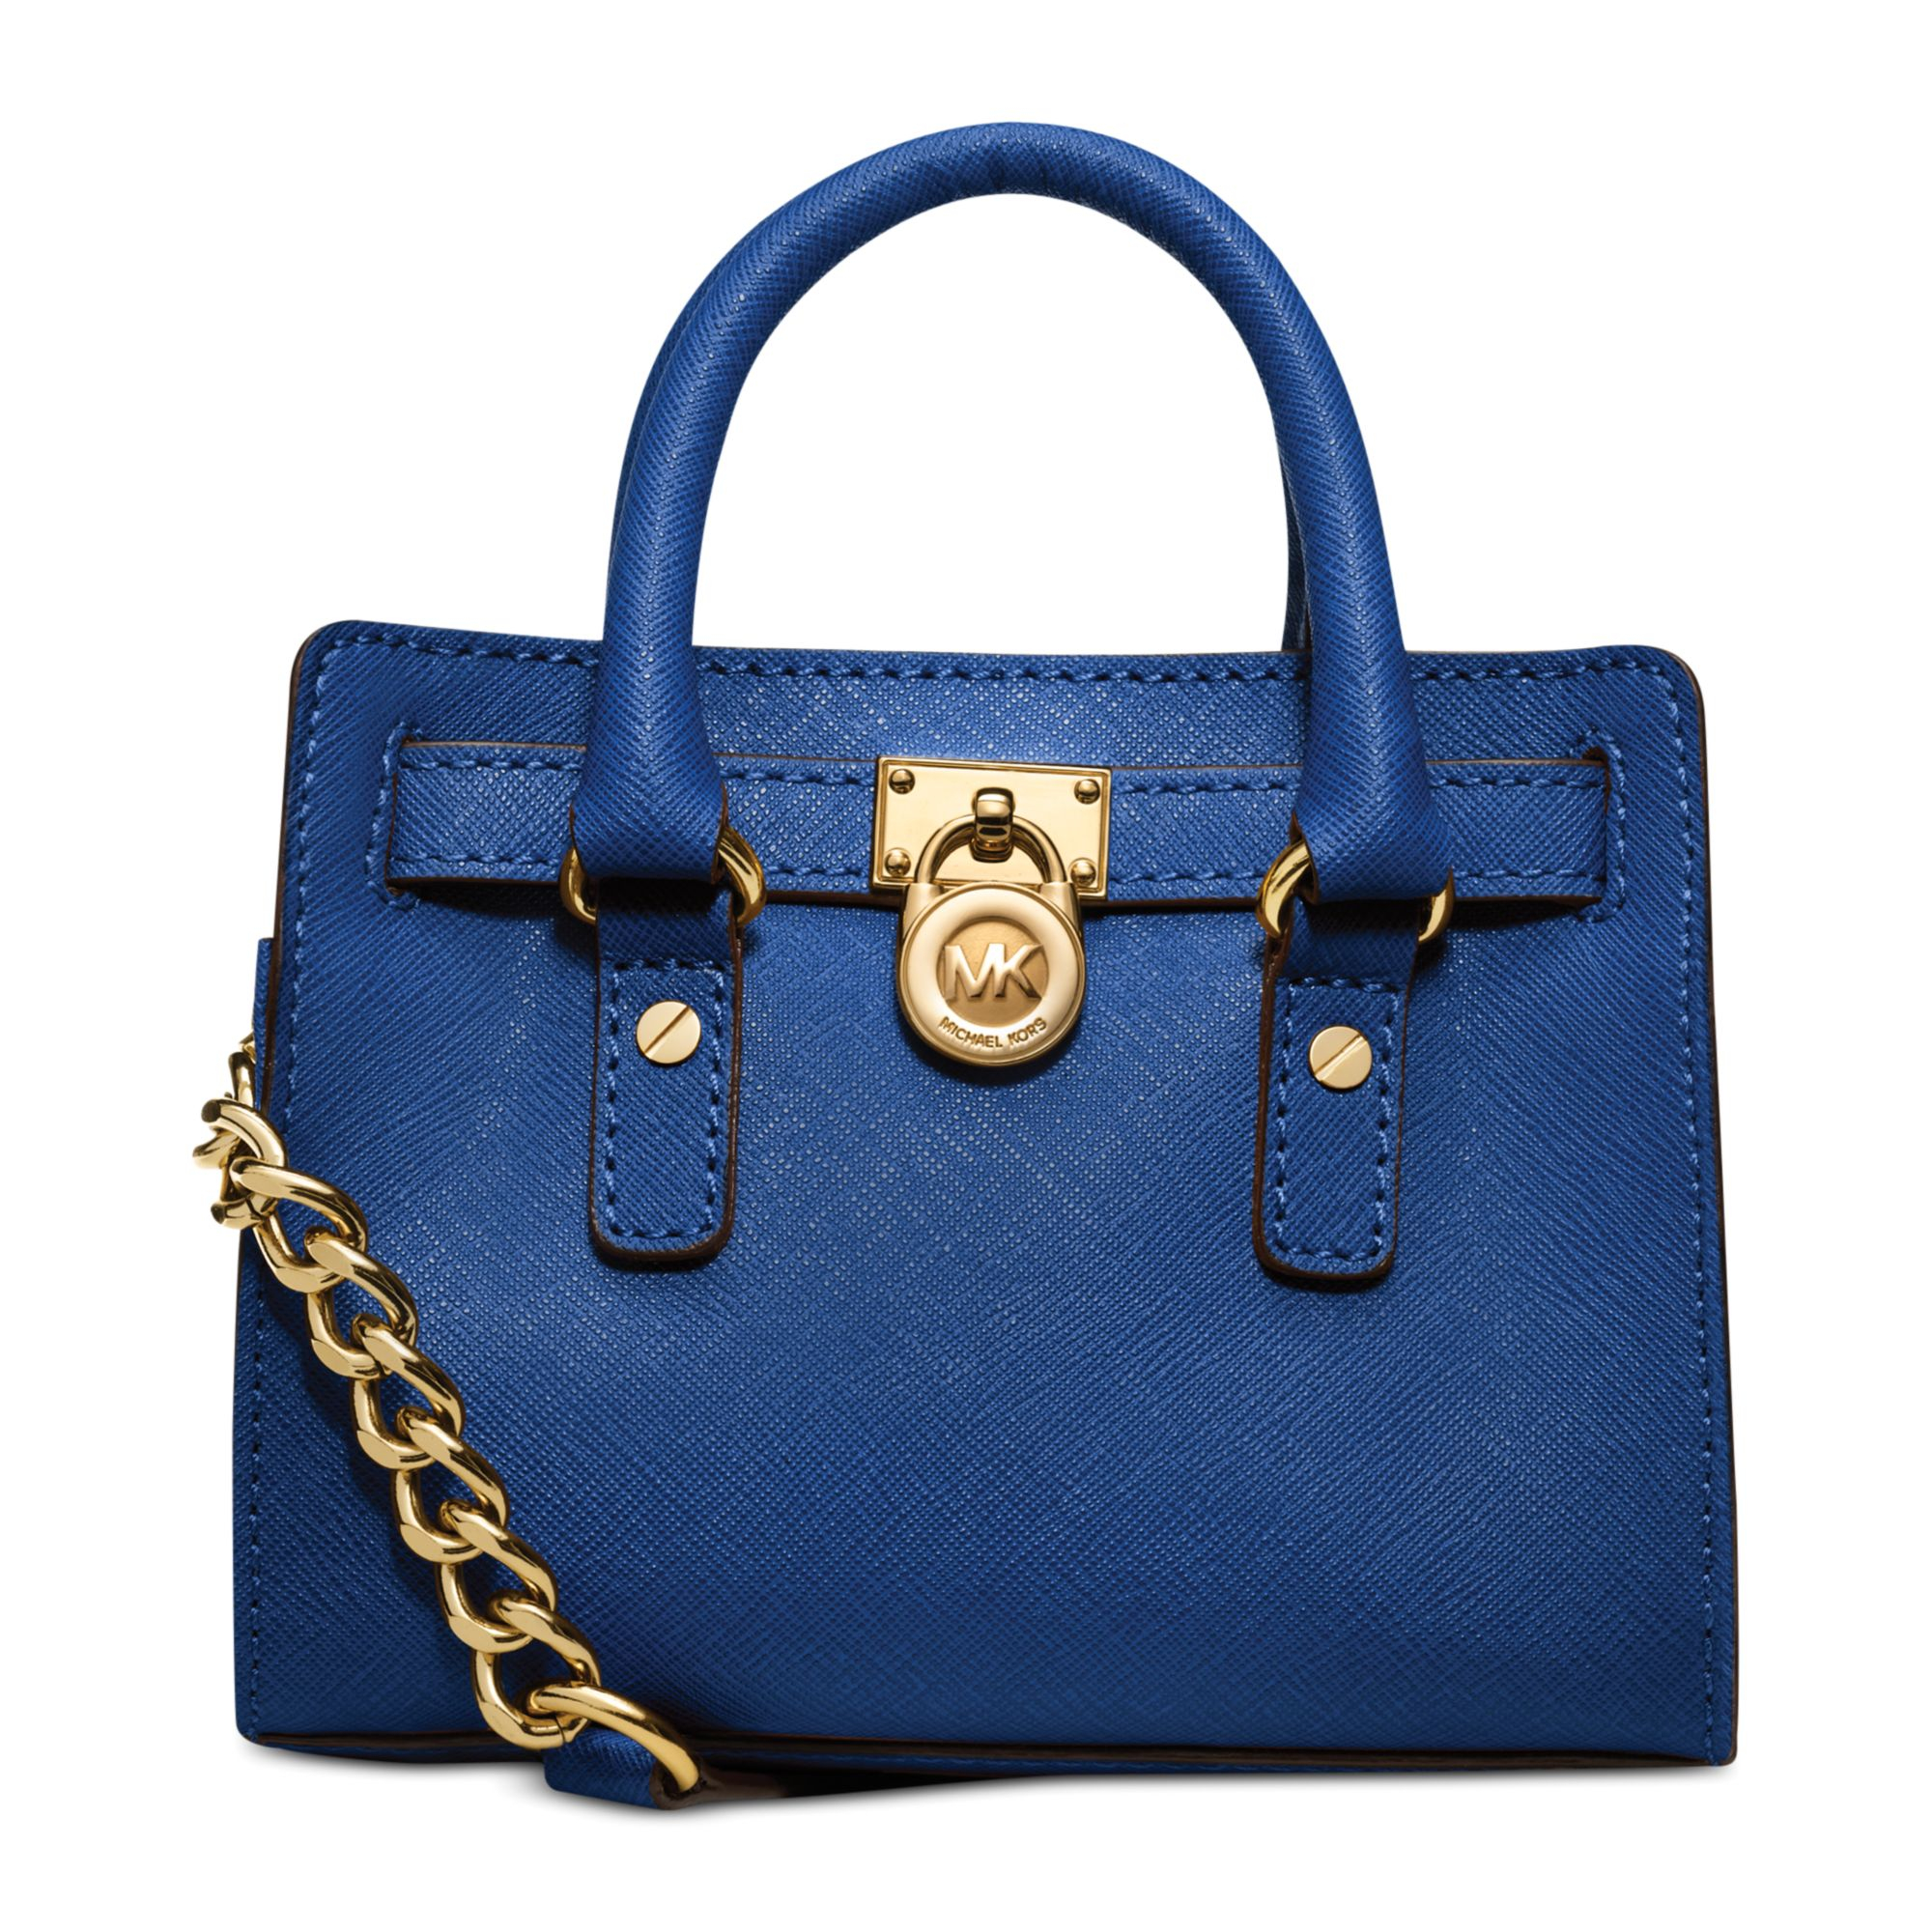 michael kors cobalt blue purse